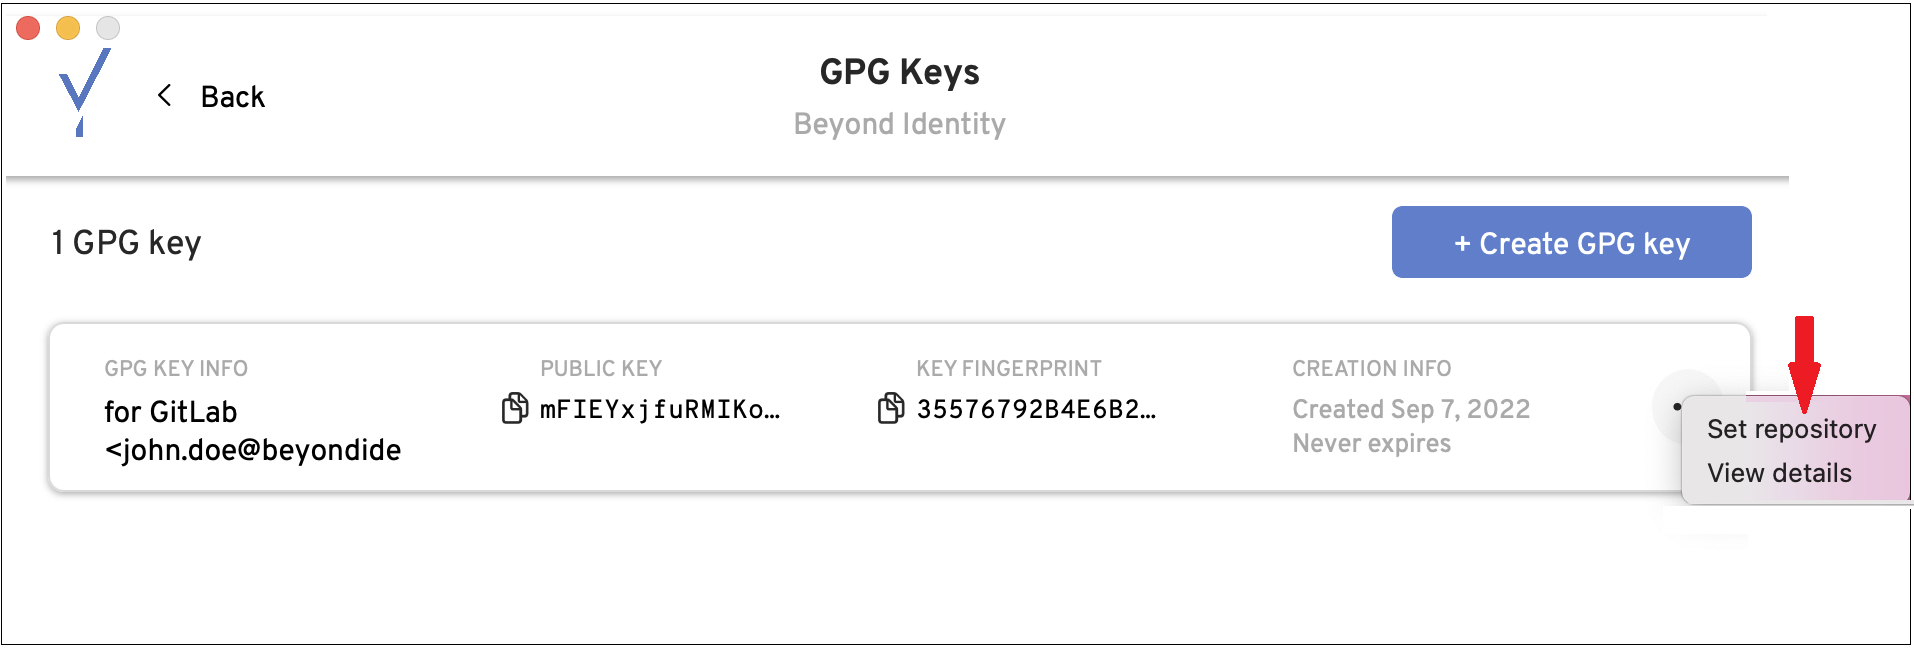 gpg_keys_click_set_repo.png